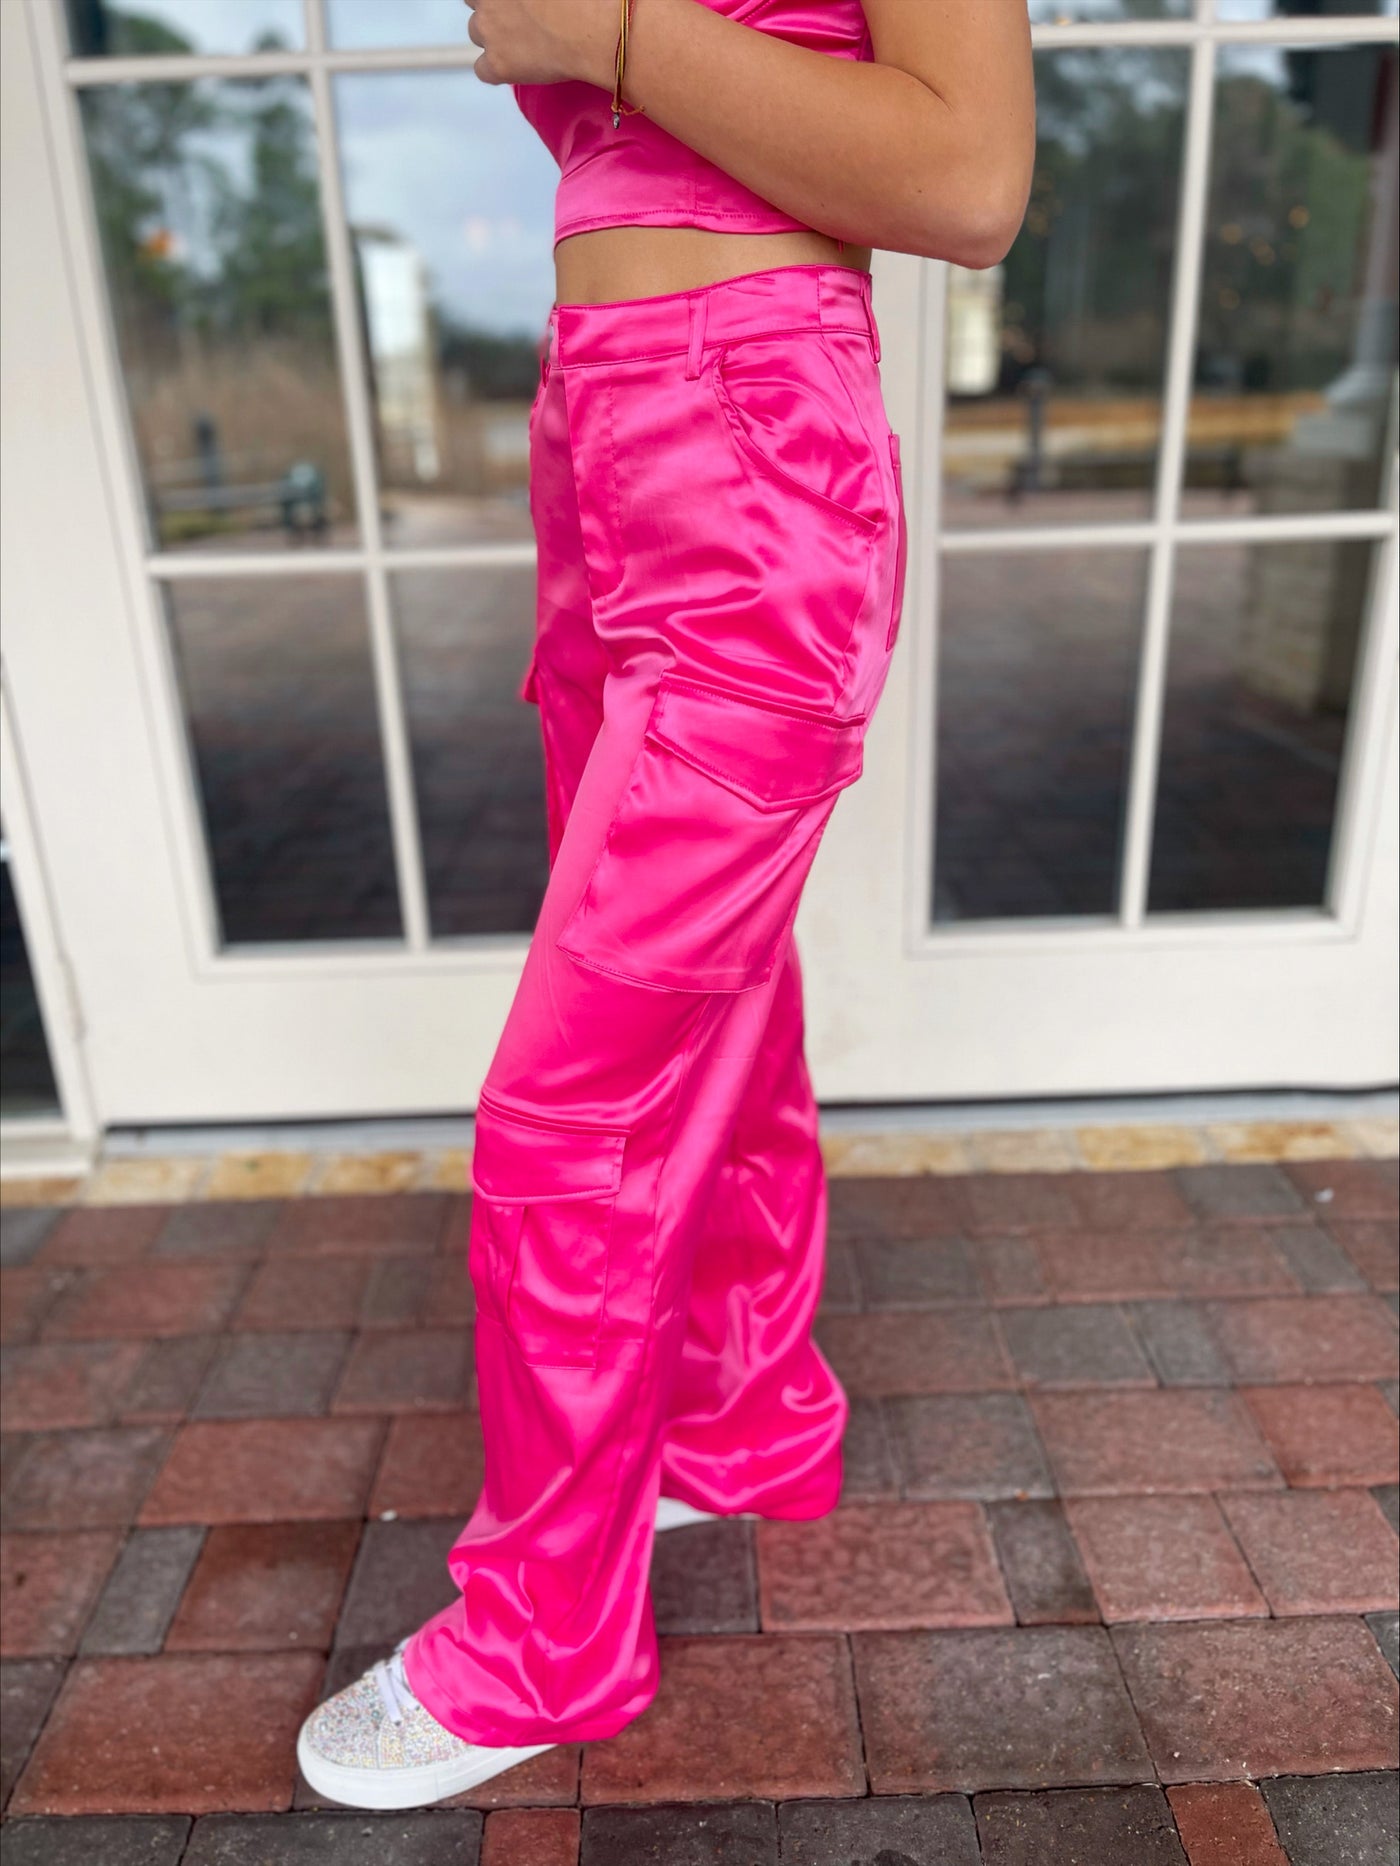 Hot Pink Satin Cargo Pants